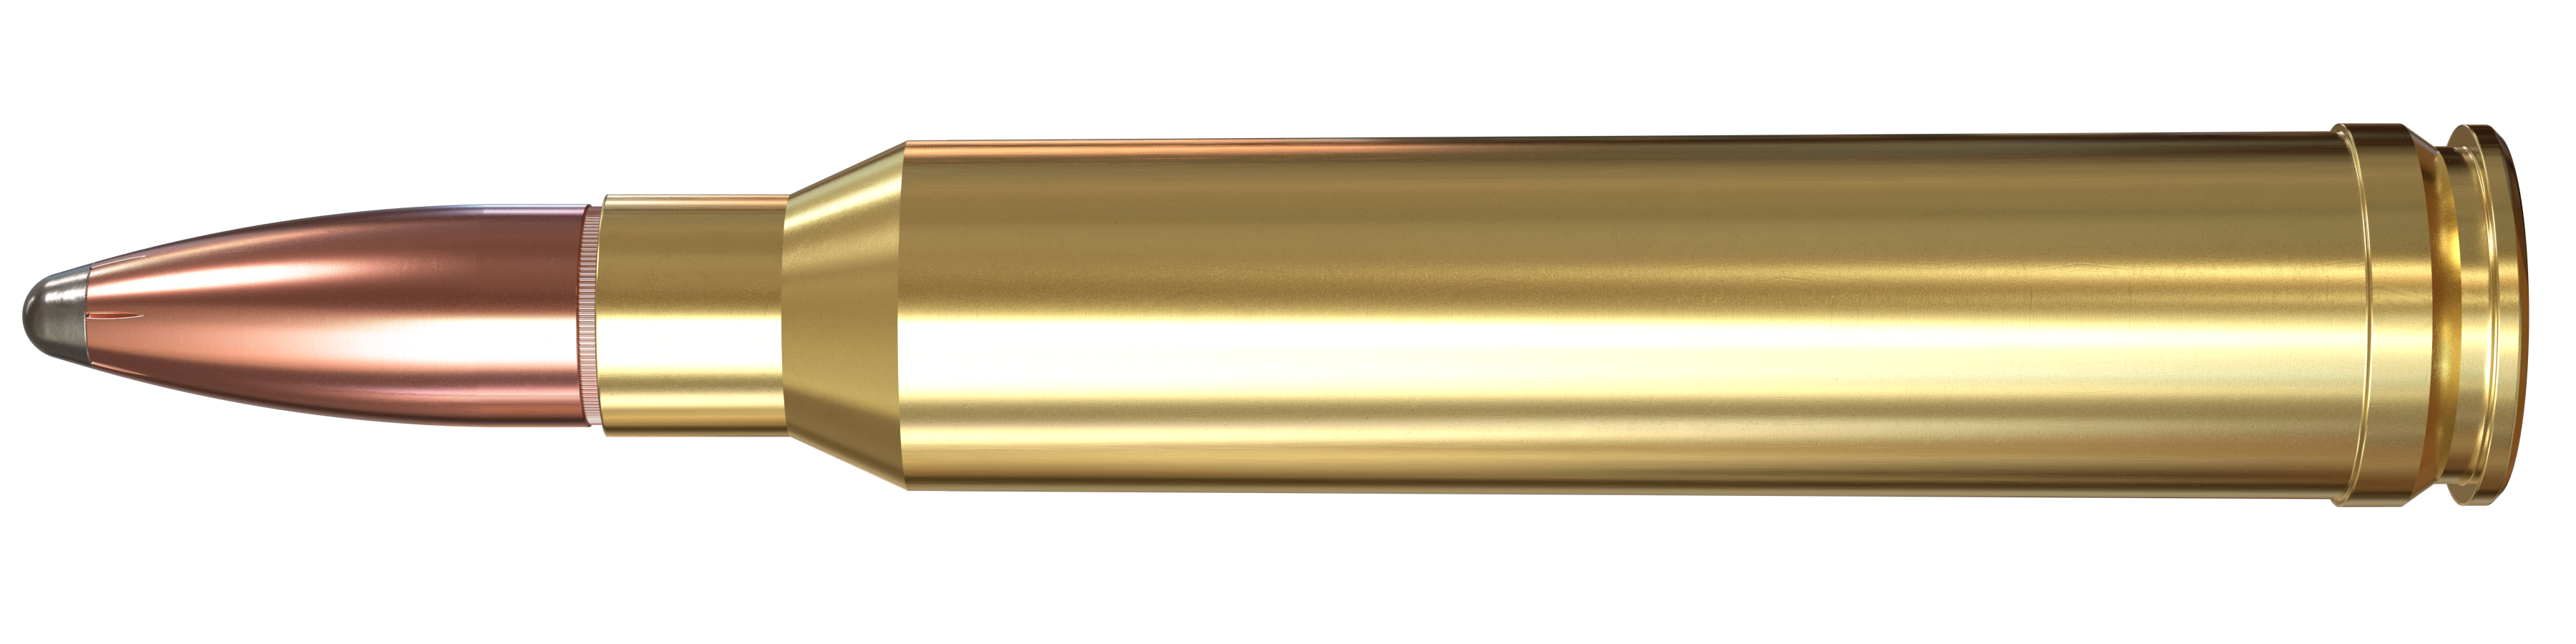 264 Winchester Magnum, 140 Grain Features